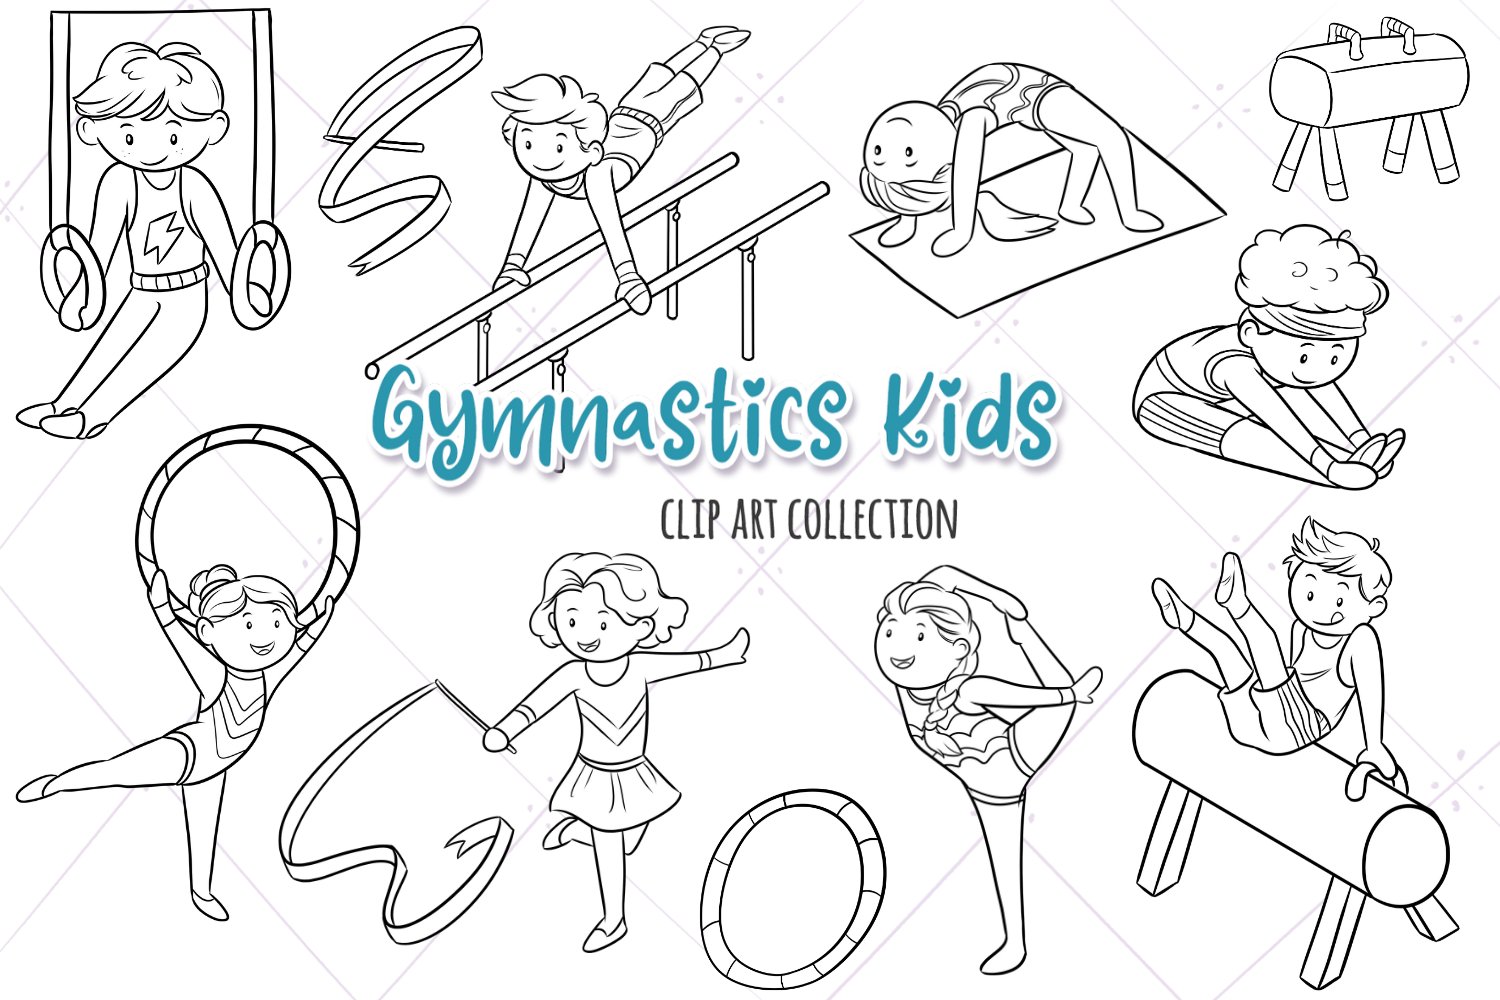 Gymnastics Kids Digital Stamps cover image.